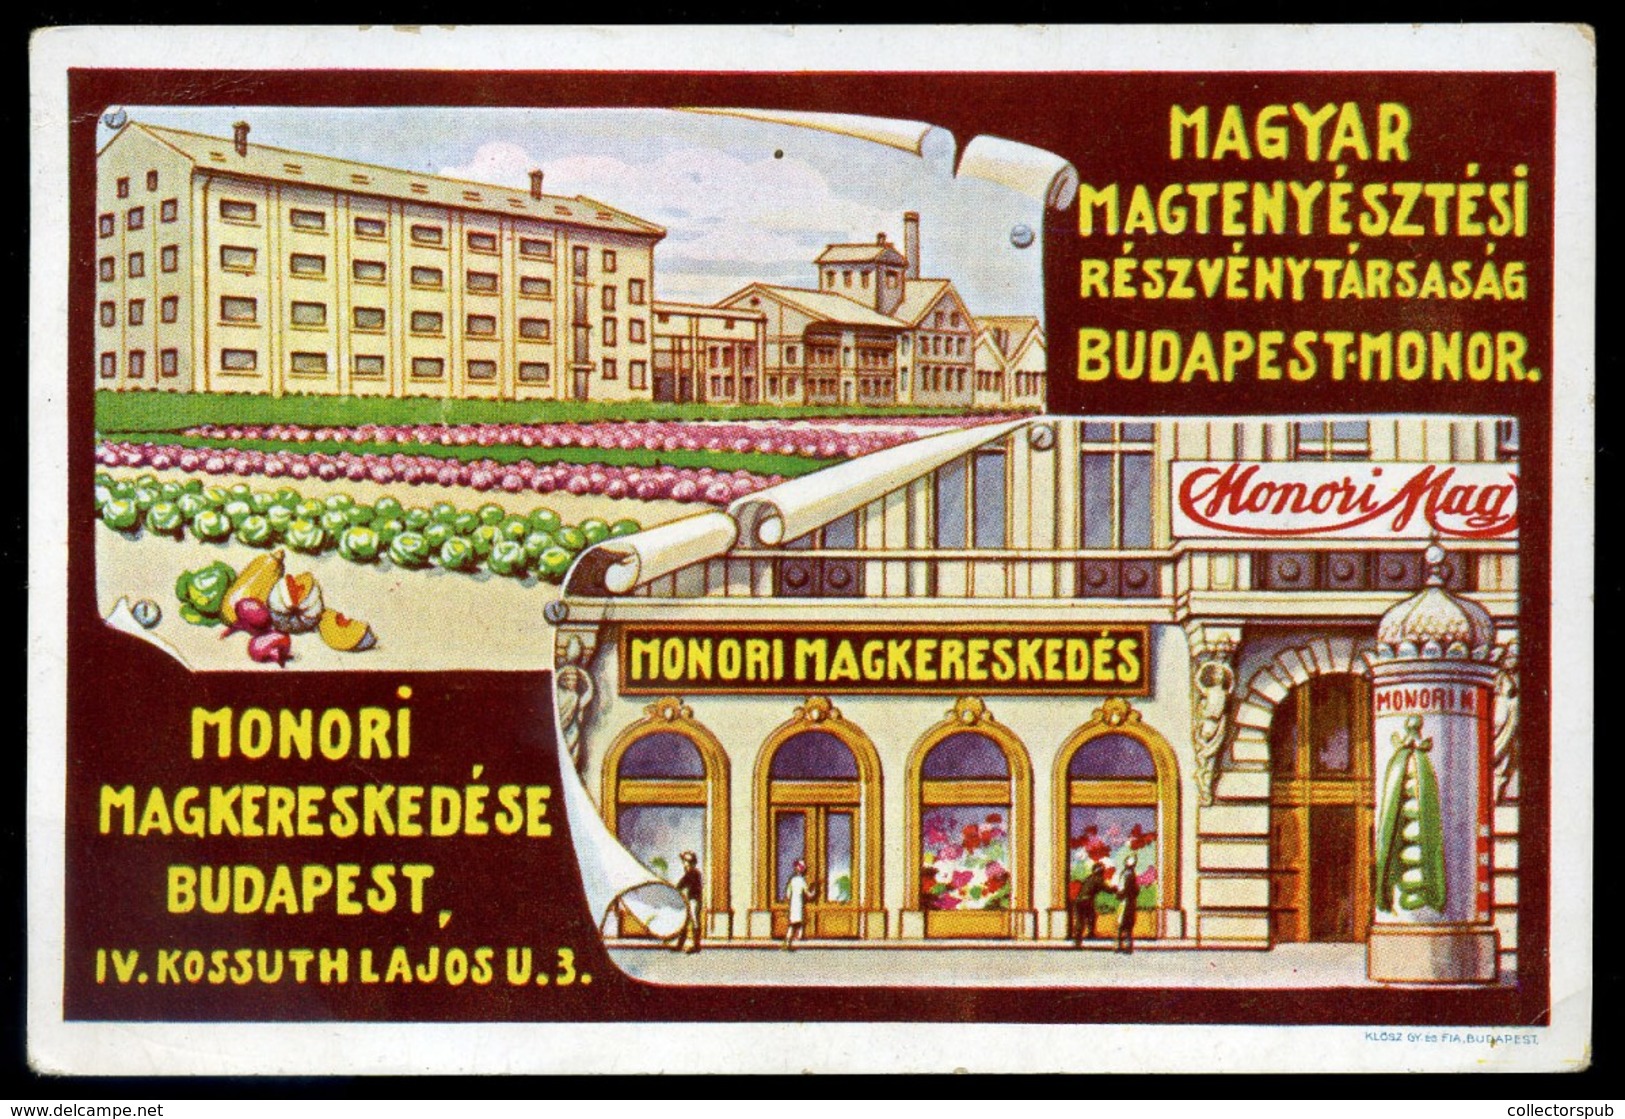 BUDAPEST Monori Magkereskedés Reklám Képeslap - Hungary